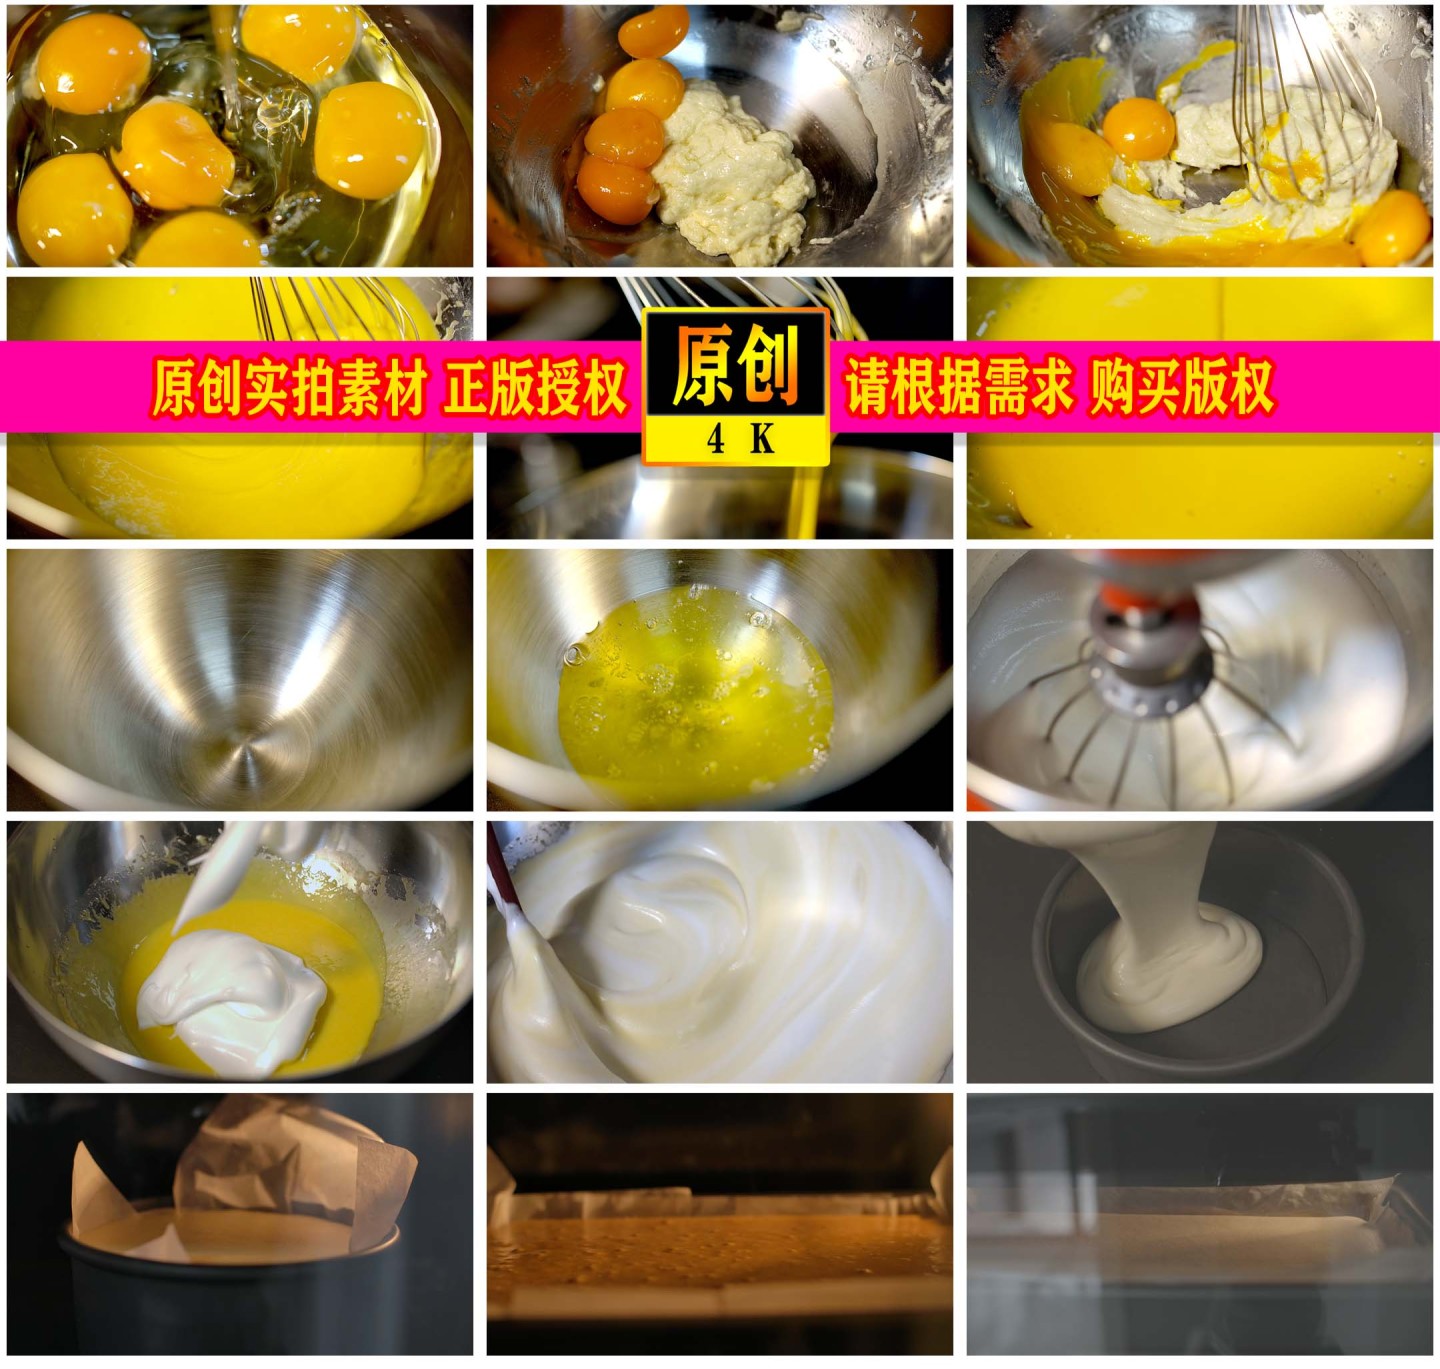 蛋糕烘培制作烤箱广告宣传4K素材